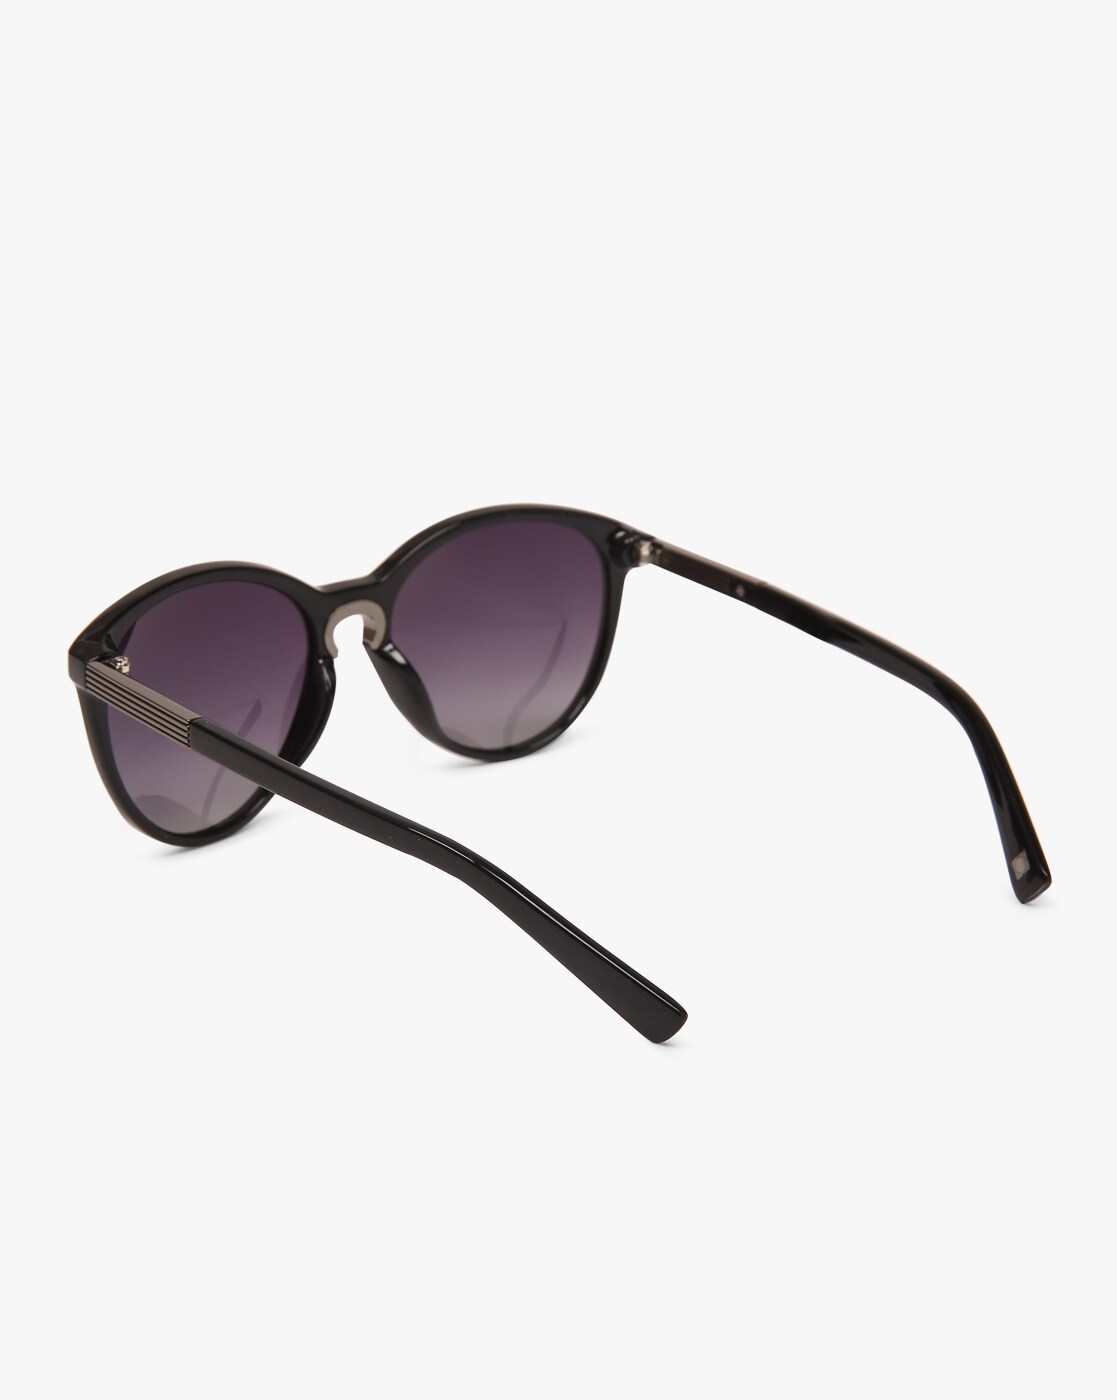 Buy Macv Eyewear Sports Sunglasses Black For Men & Women Online @ Best  Prices in India | Flipkart.com